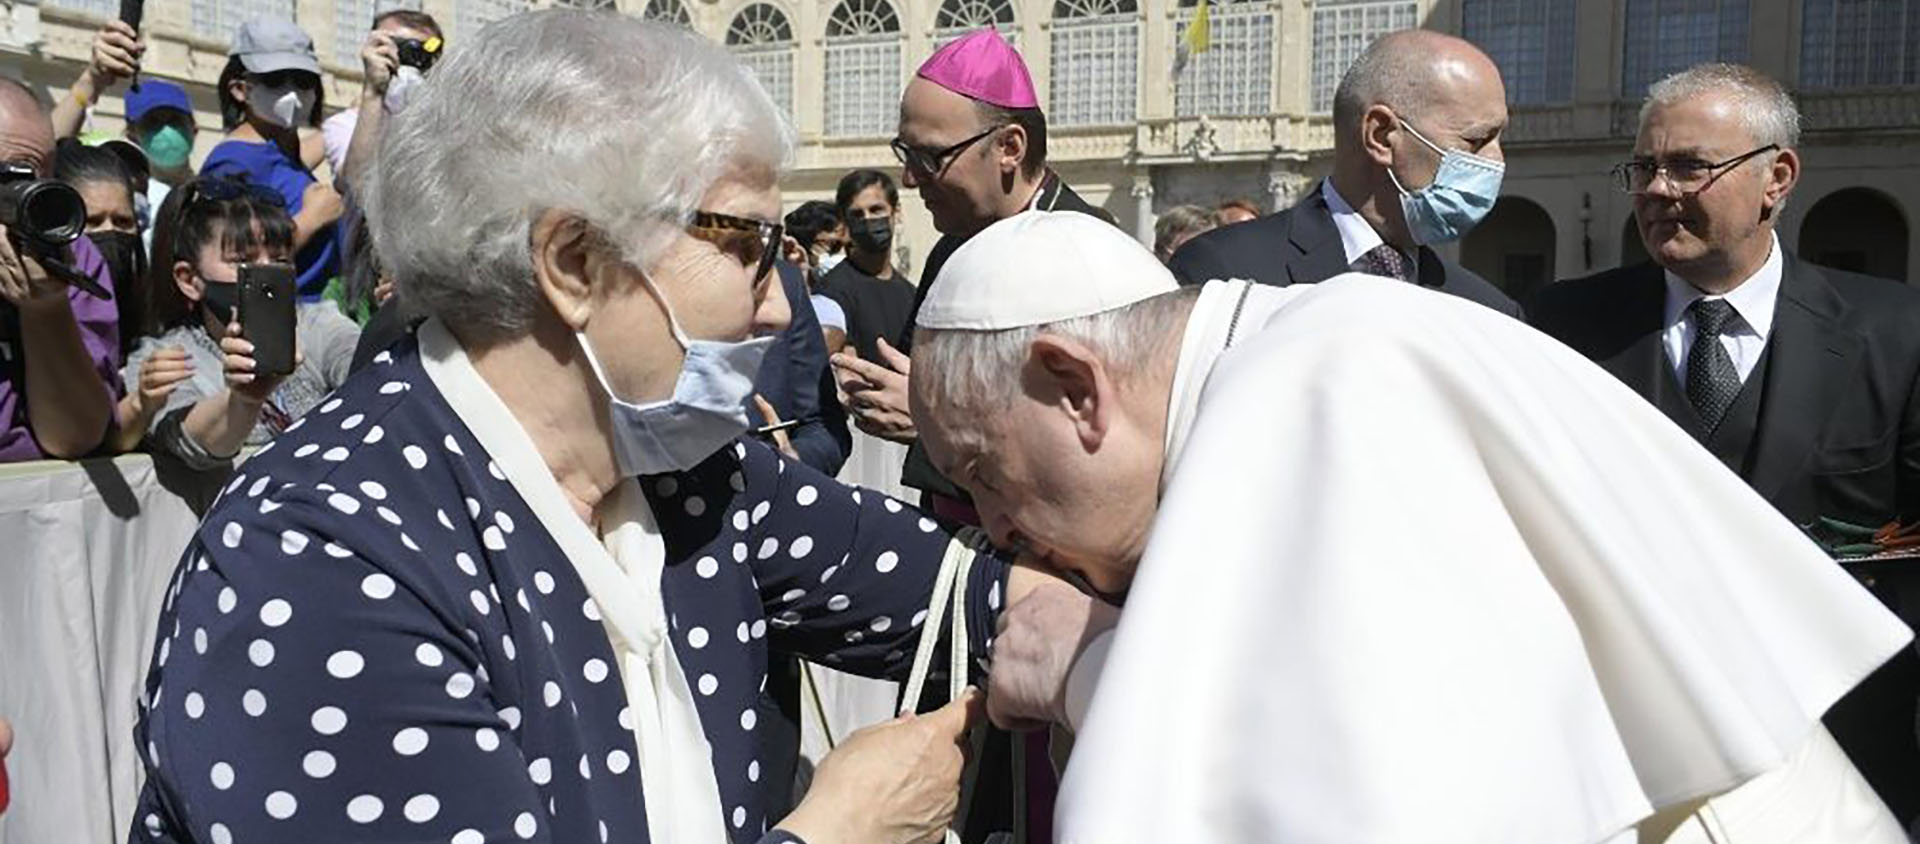 Le pape embrasse le bras d'une femme rescapée du camp d'Auschwitz-Birkenau | © Vatican News